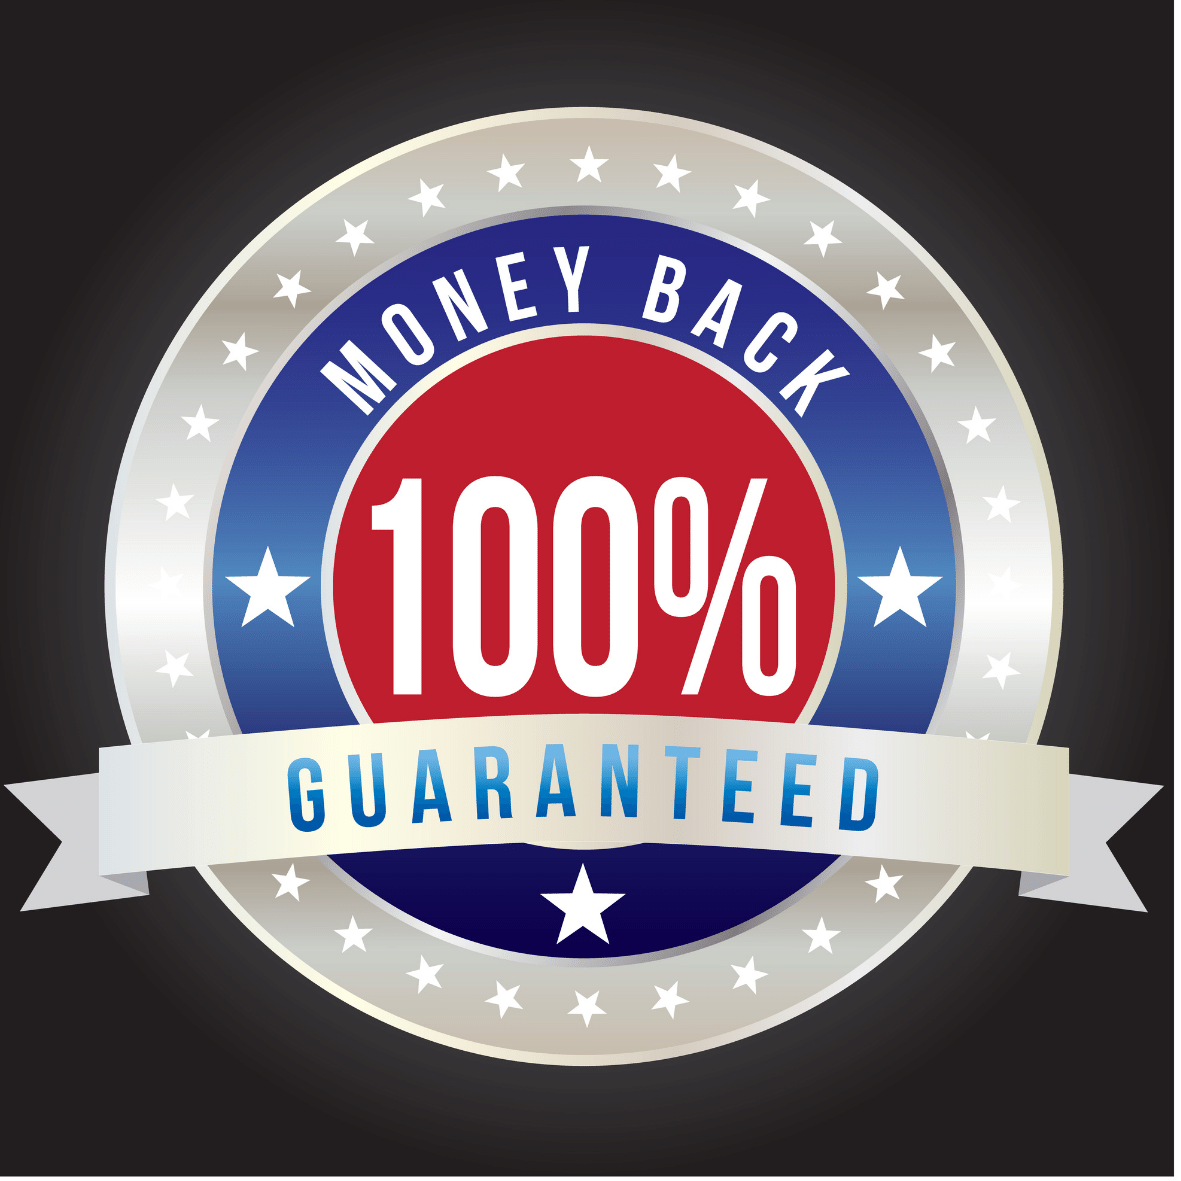 100% Geld zurück Garantie